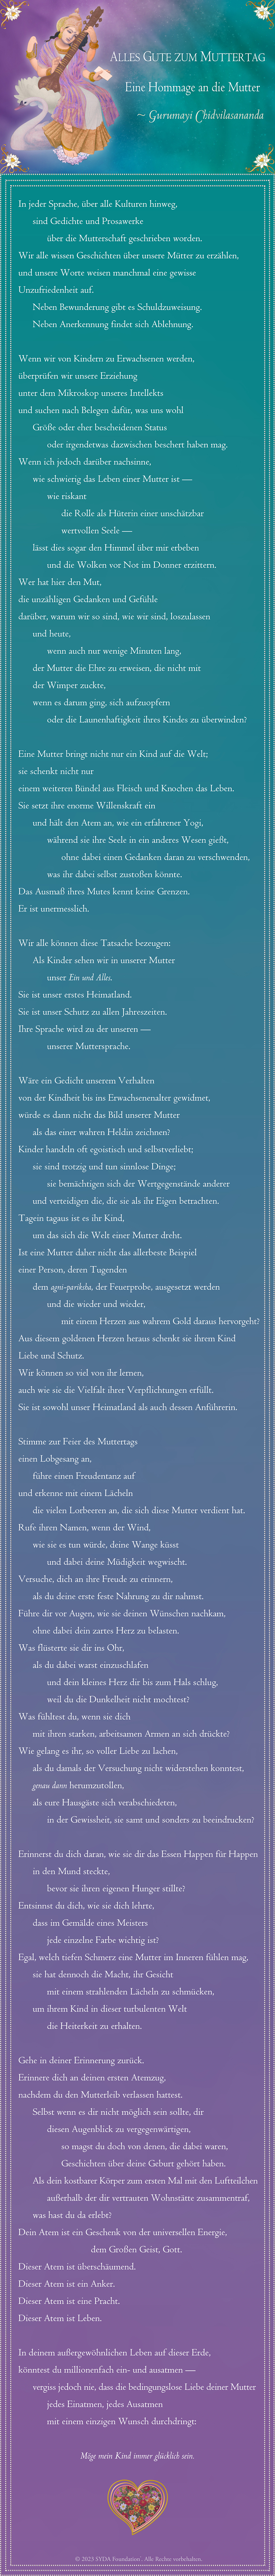 German Poem